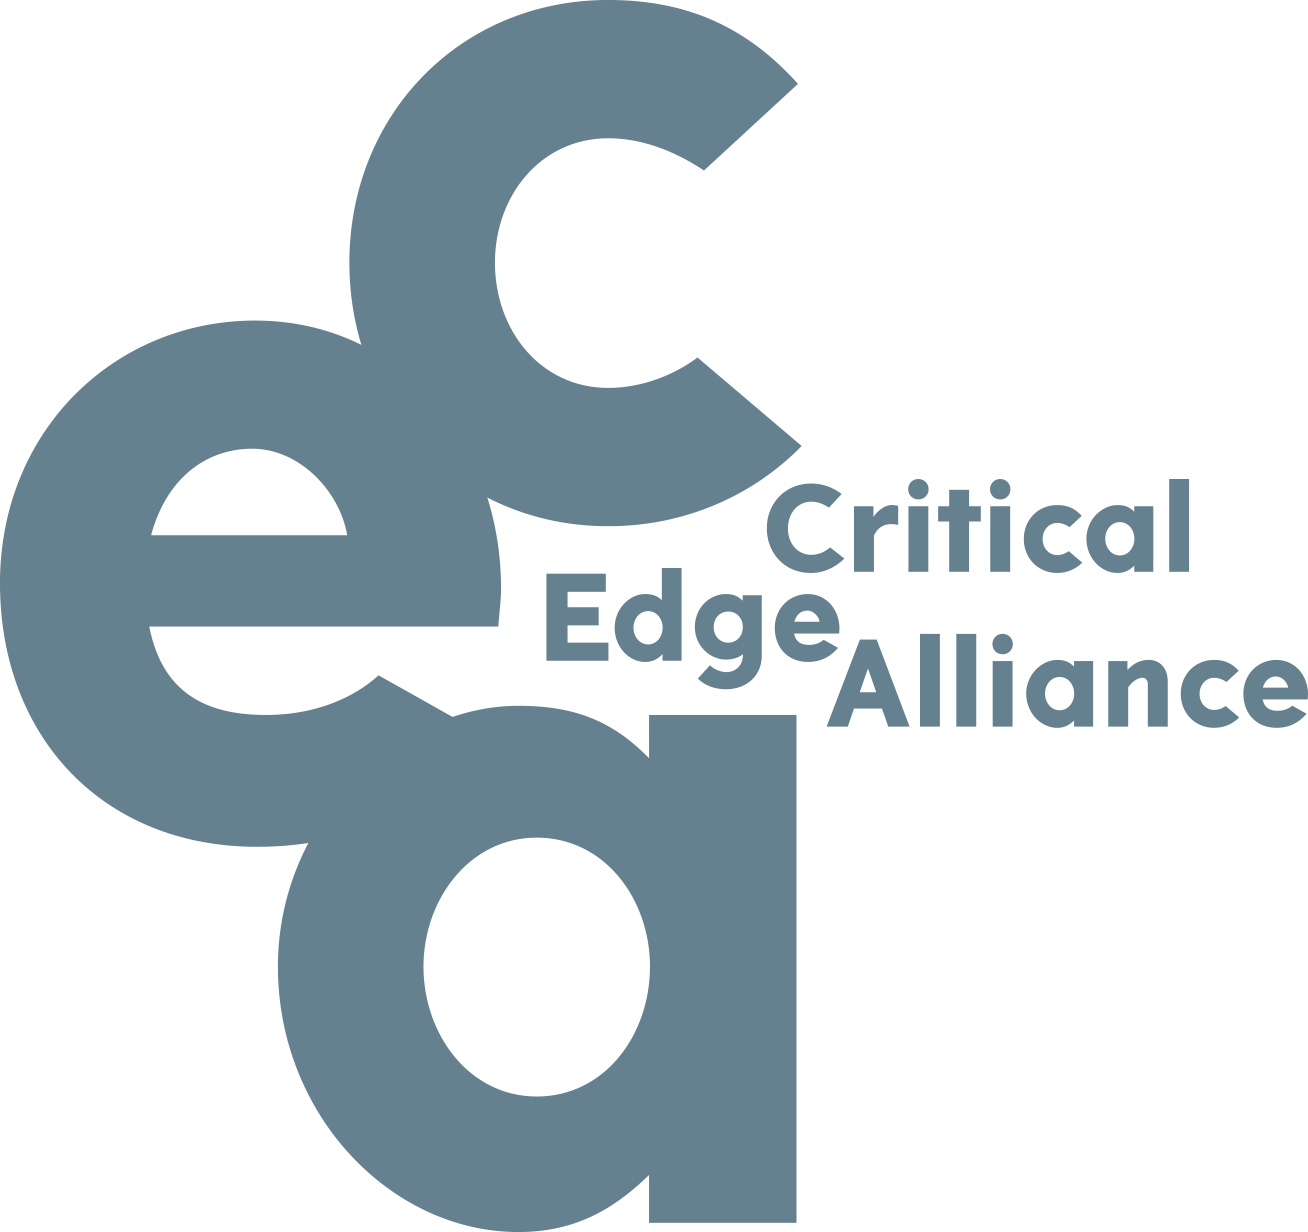 Appel à candidatures étudiant.e.s ambassadeur.rice.s Critical Edge Alliance 